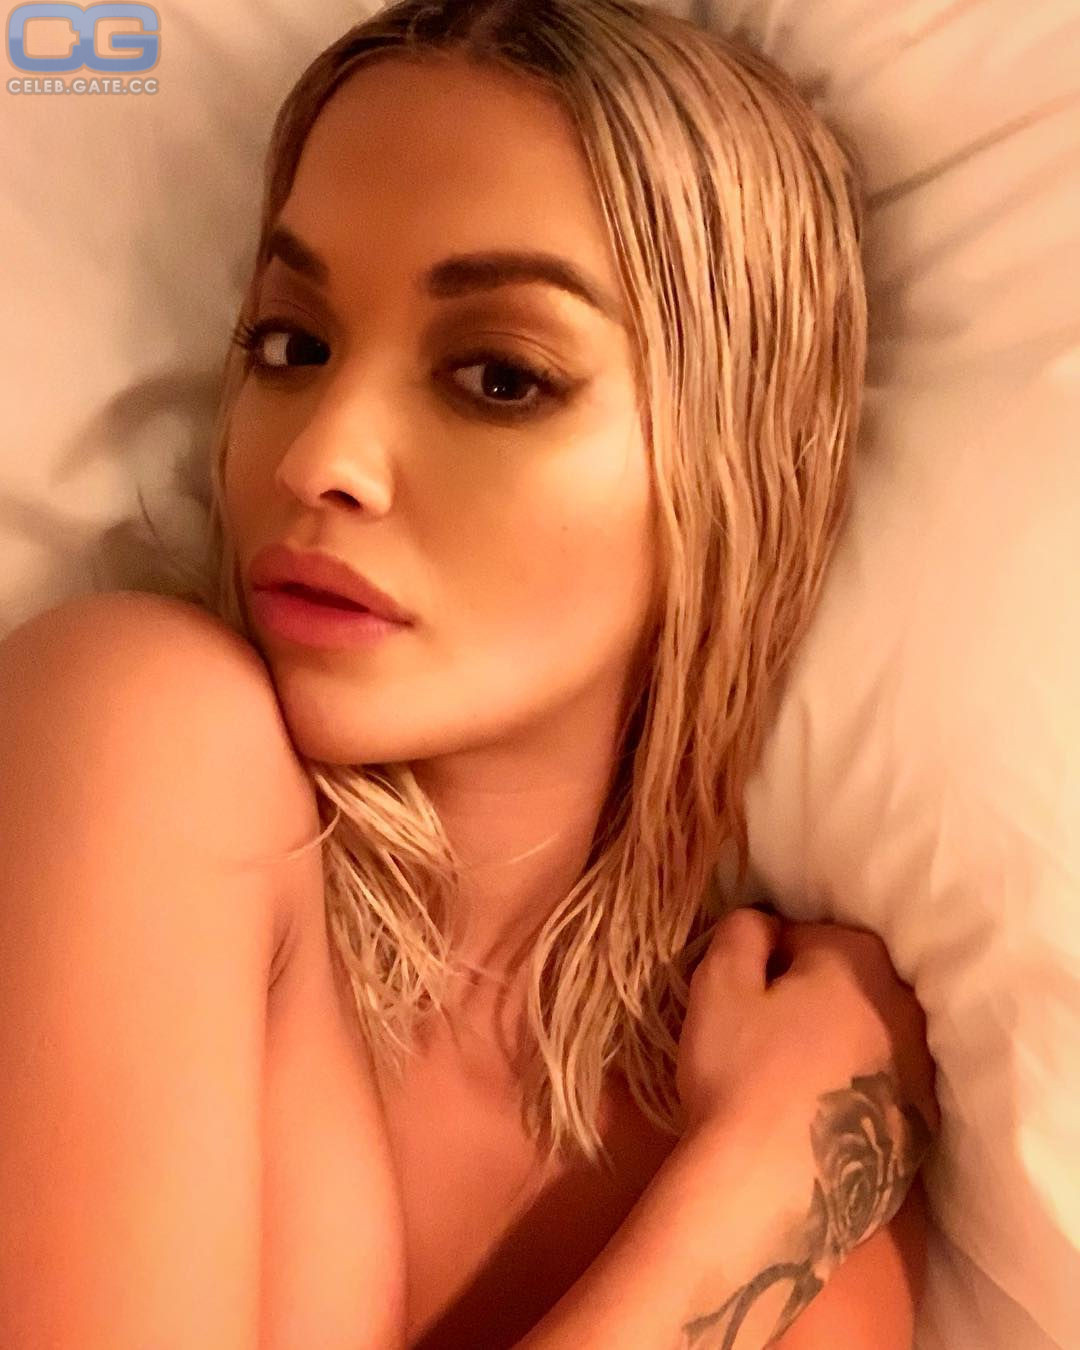 Rita Ora leaked nudes